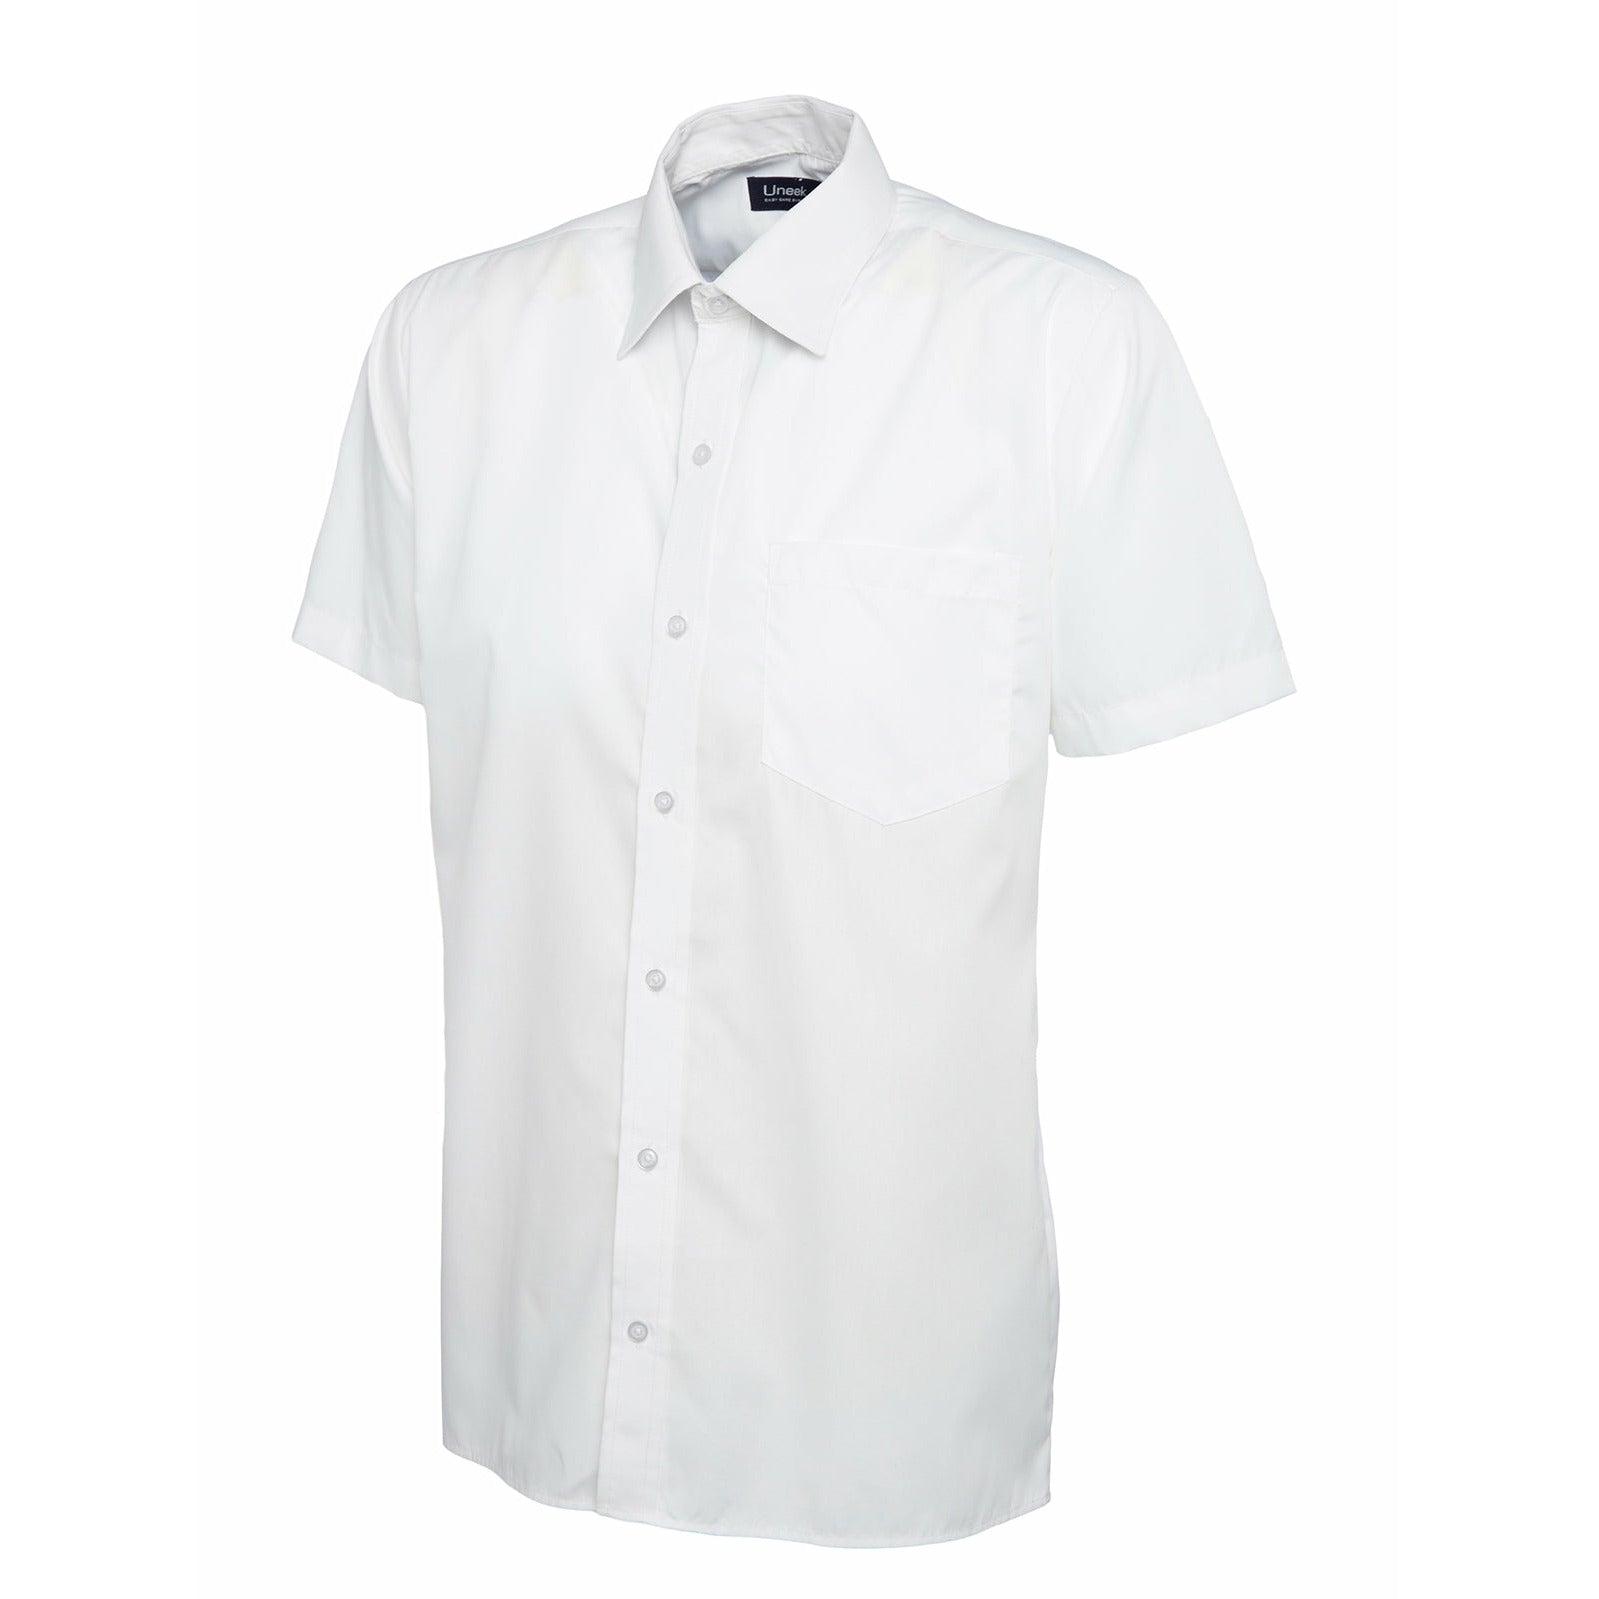 Mens Poplin Half Sleeve Shirt (14.5 - 16.5) - White